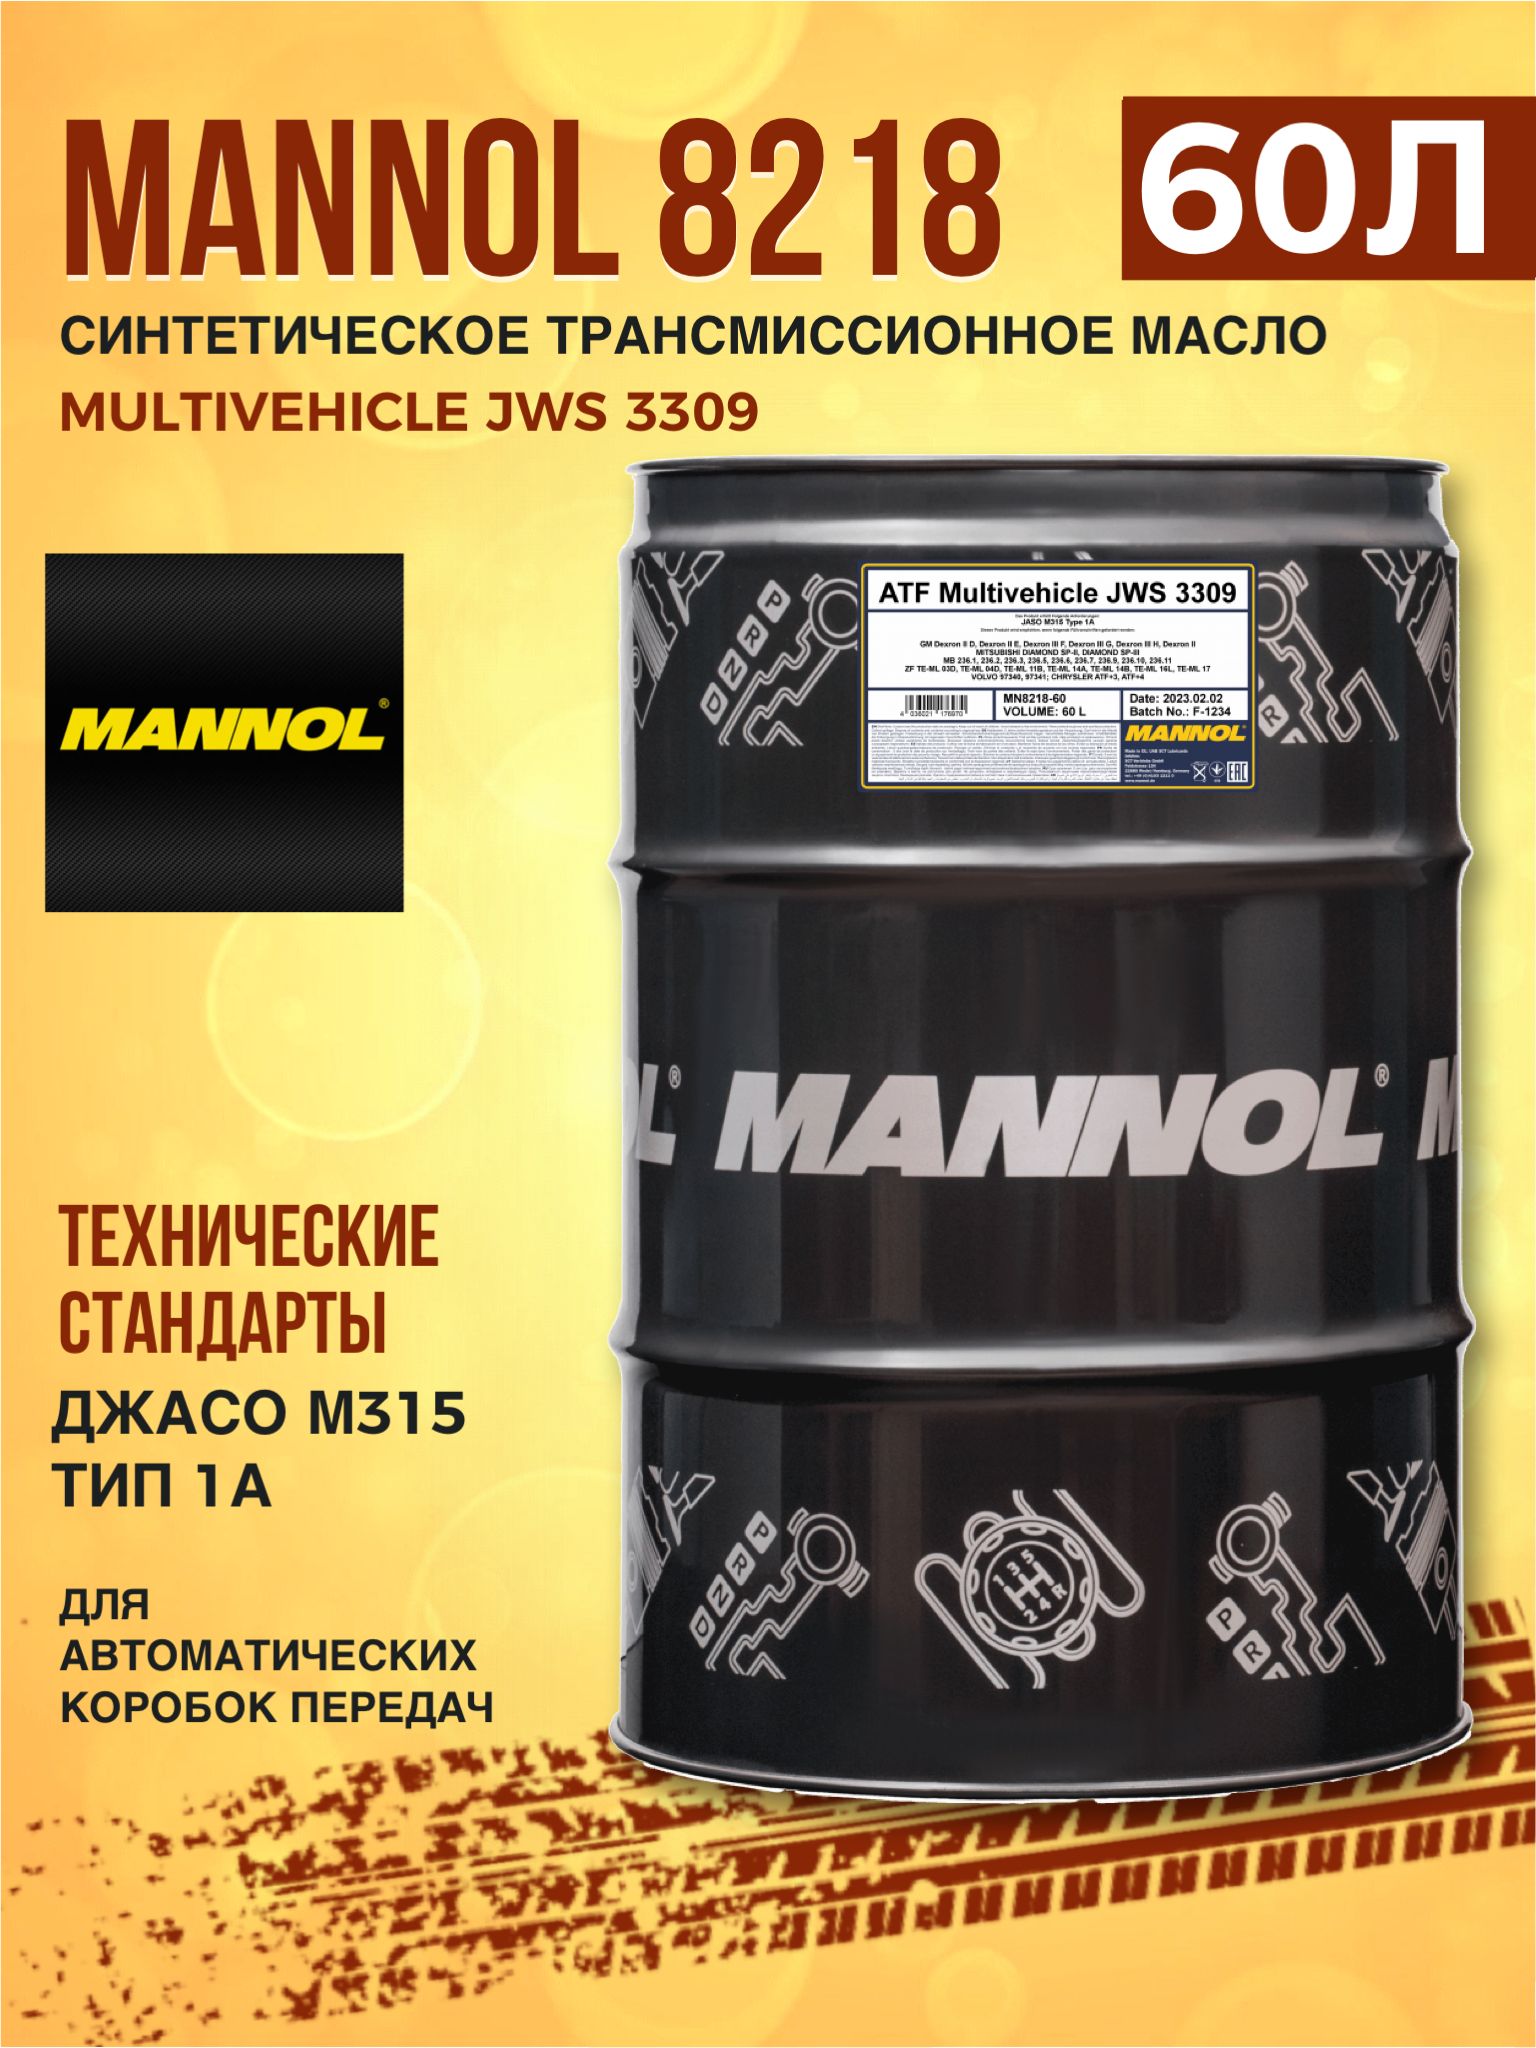 Трансмиссионное масло манол отзывы. Масло Mannol ATF Multivehicle JWS 3309 артикул.